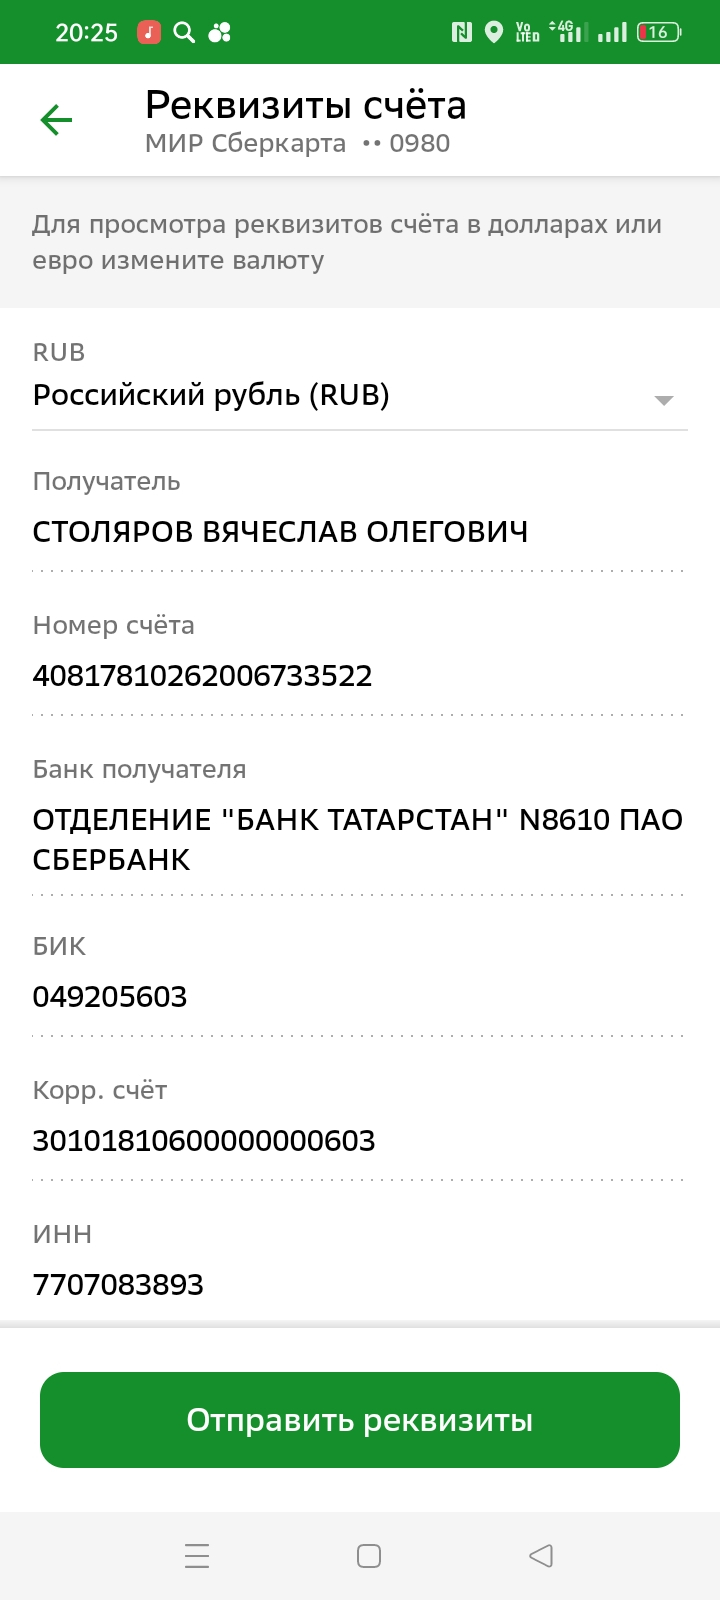 Сайт 24000.ru - Заявление на оказание финансовой помощи сироте оставшиеся без попечения родителей